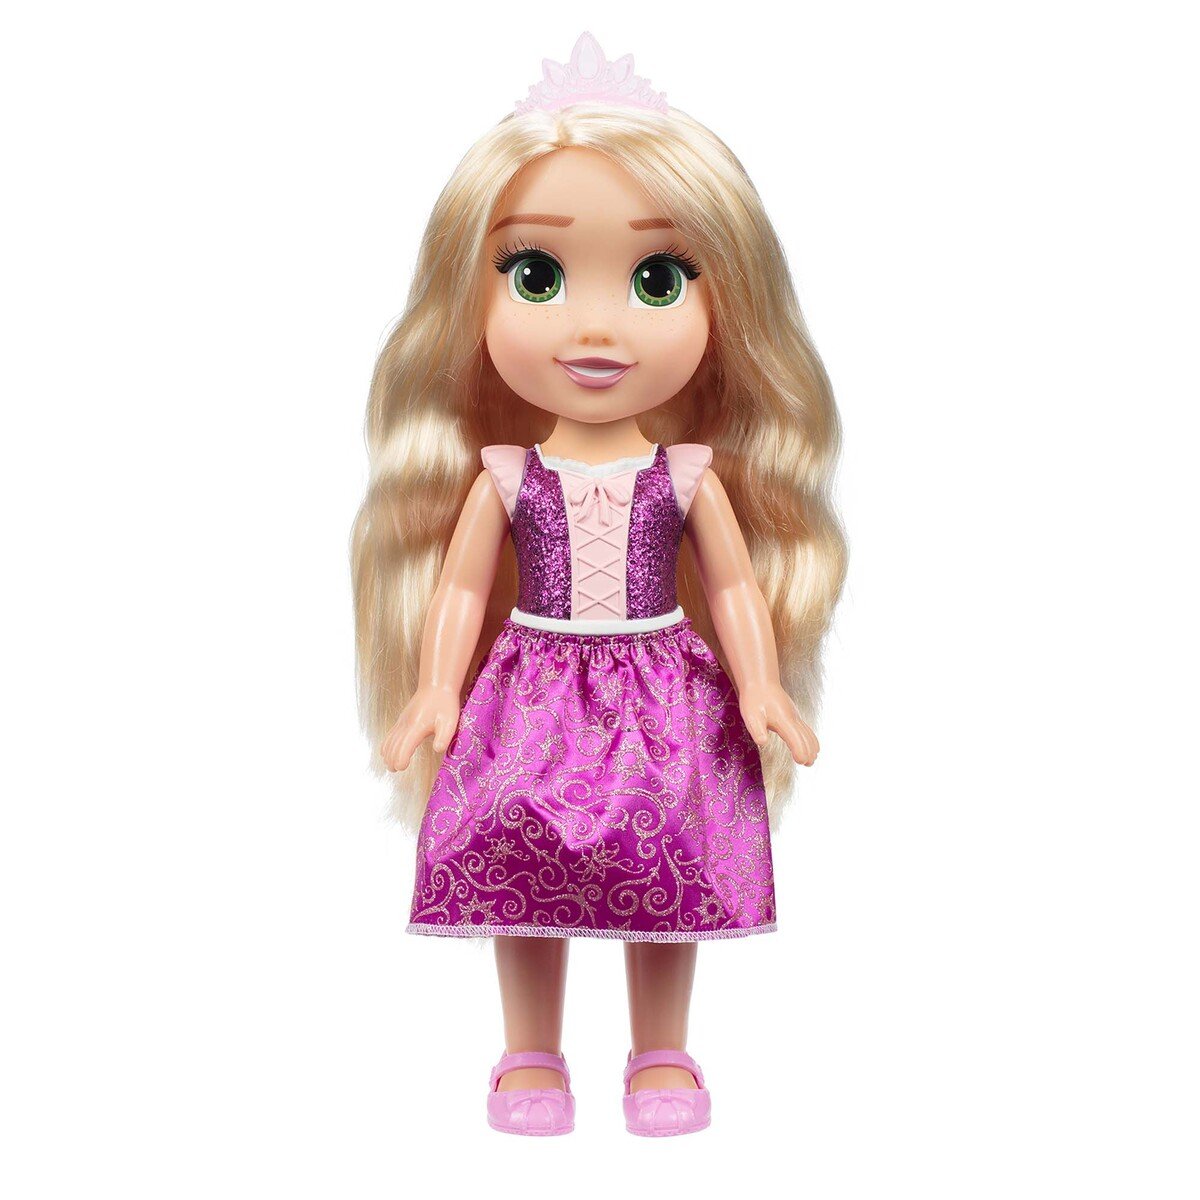 Disney Princess Value Doll 217714 Assorted